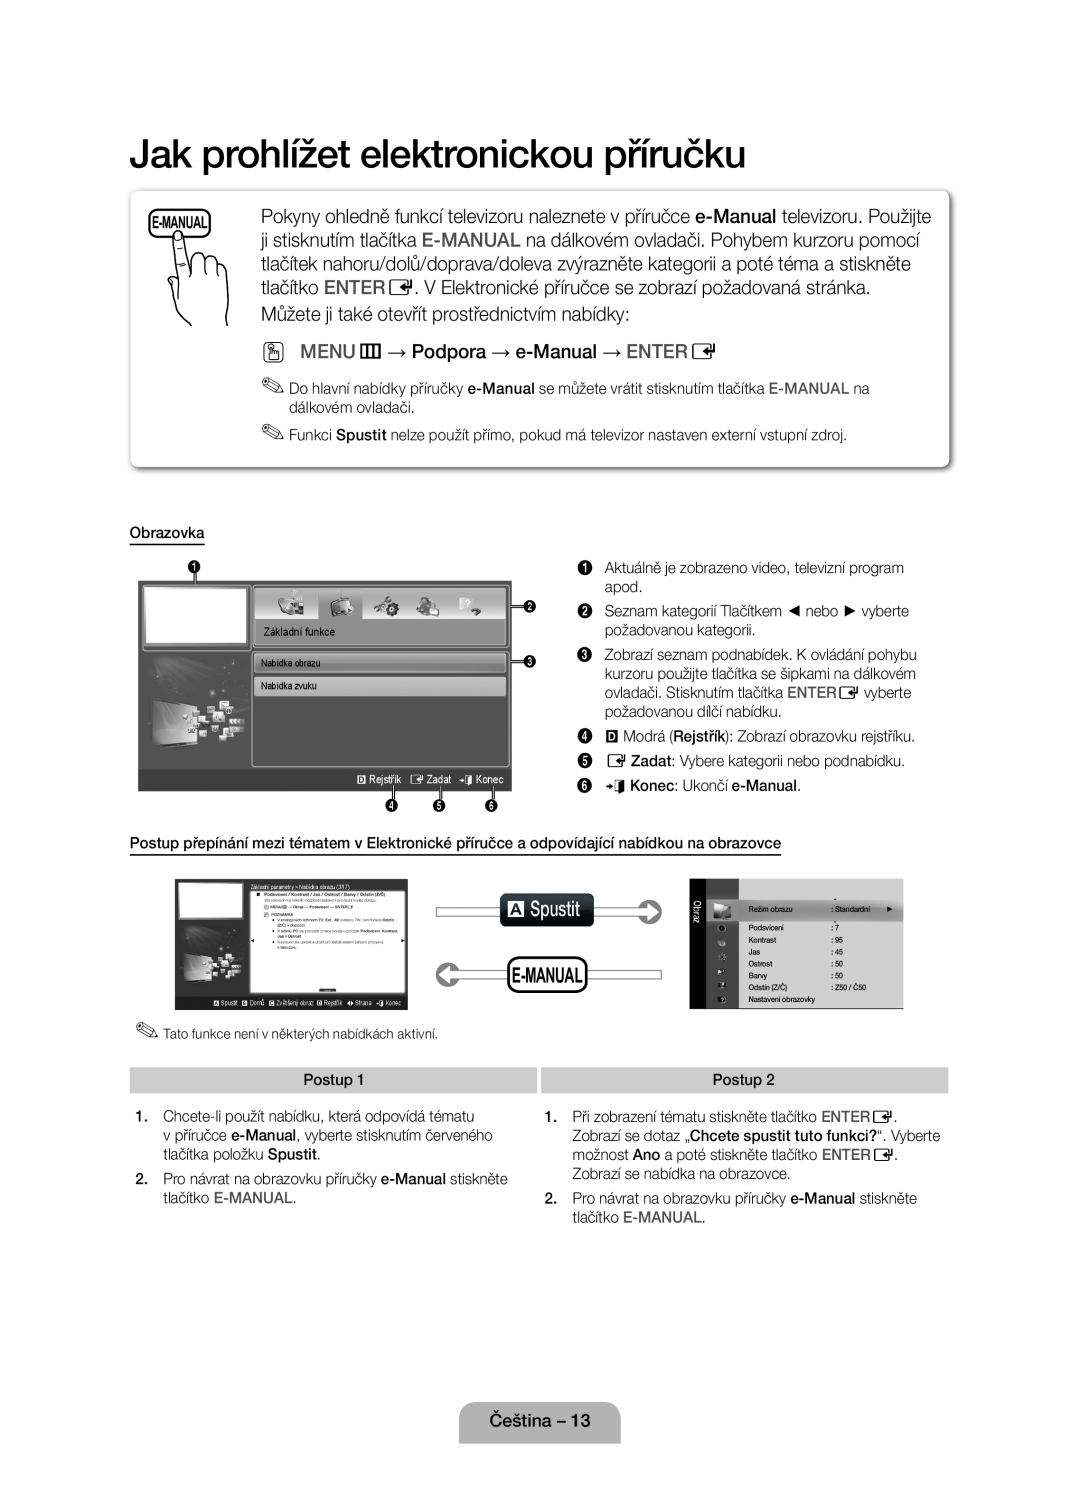 Samsung UE40D5000PWXZT Jak prohlížet elektronickou příručku, aSpustit, Můžete ji také otevřít prostřednictvím nabídky 